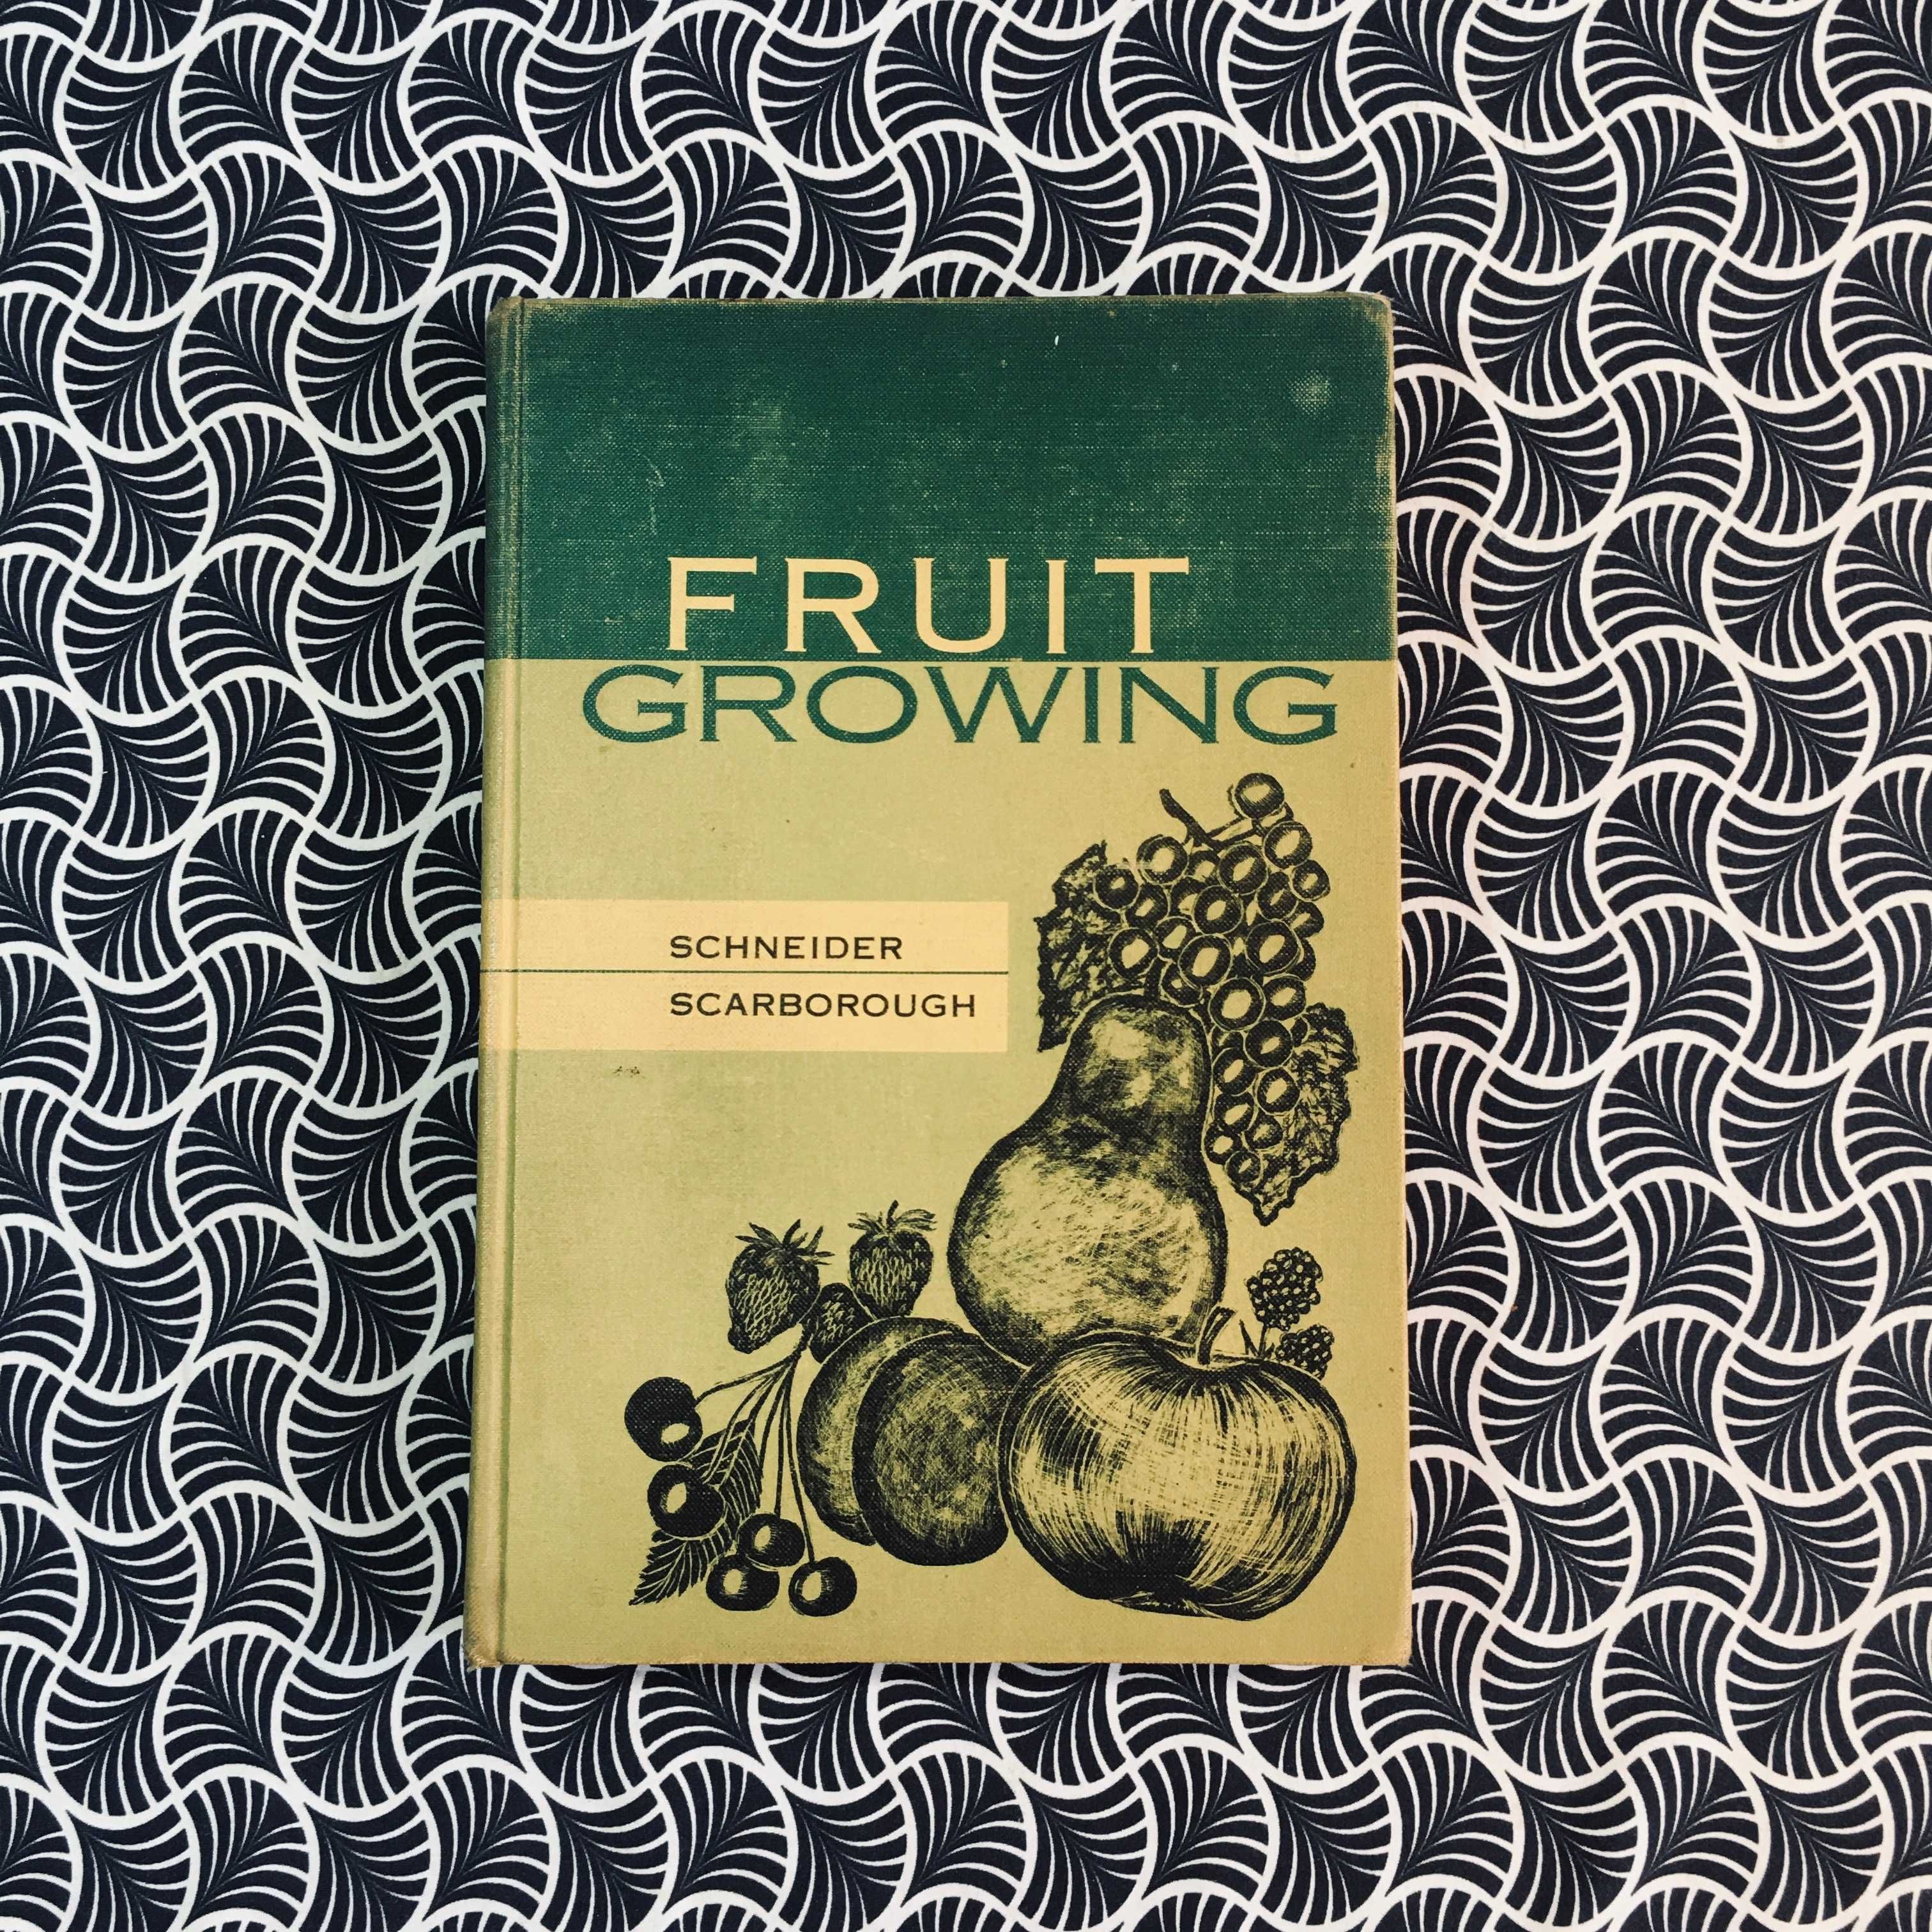 Fruit Growing - G. W. Schneider & C. C. Scarborough